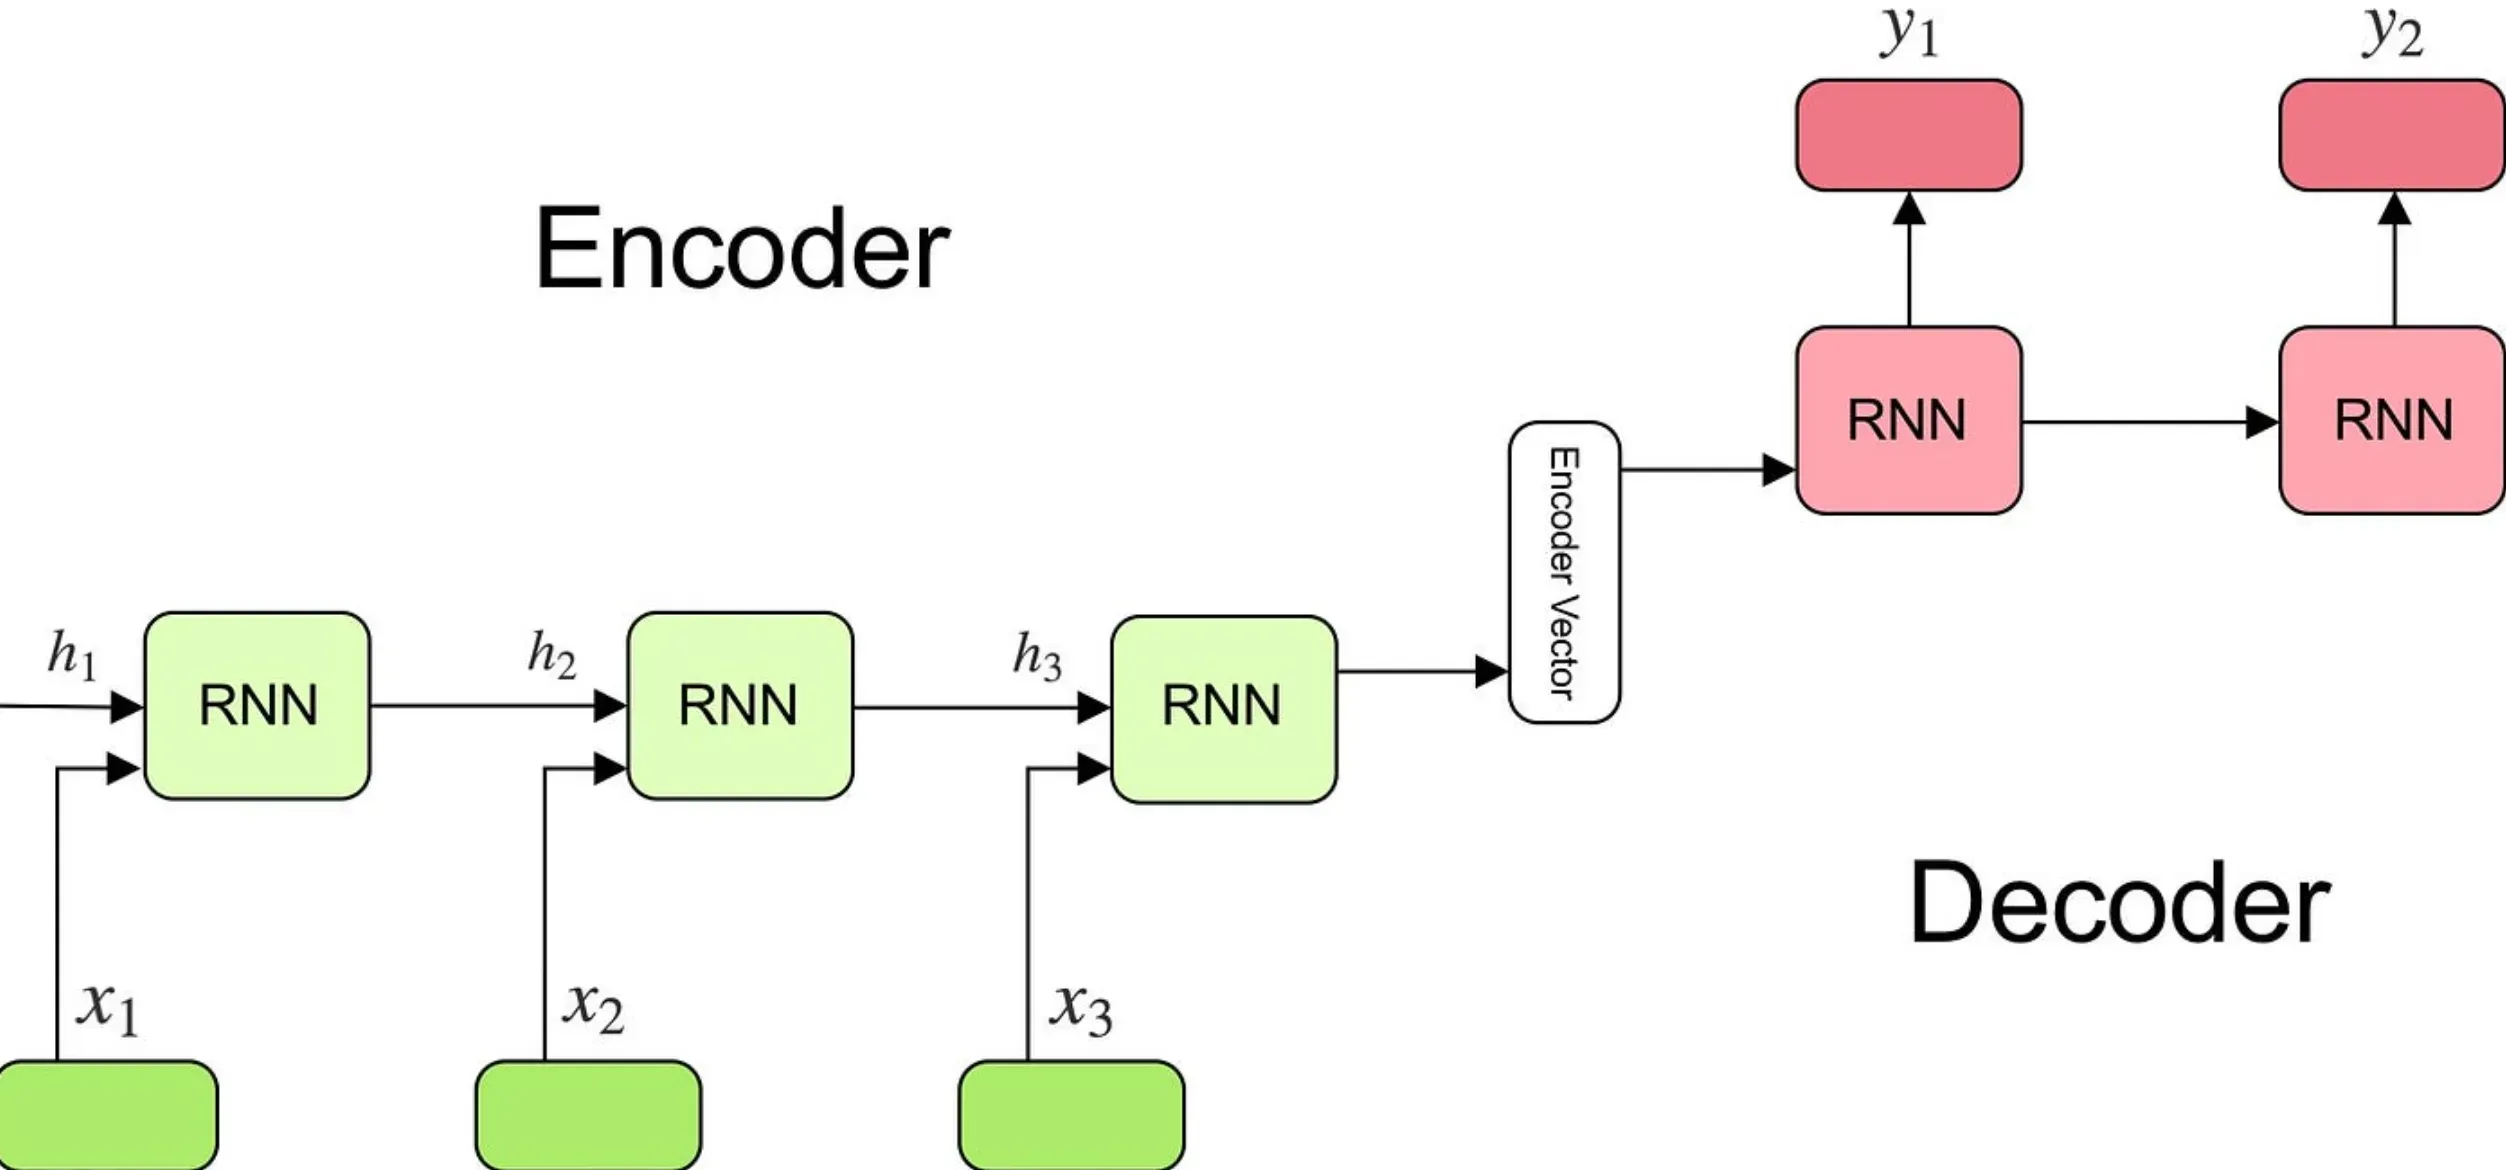 Encoder-Decoder Models